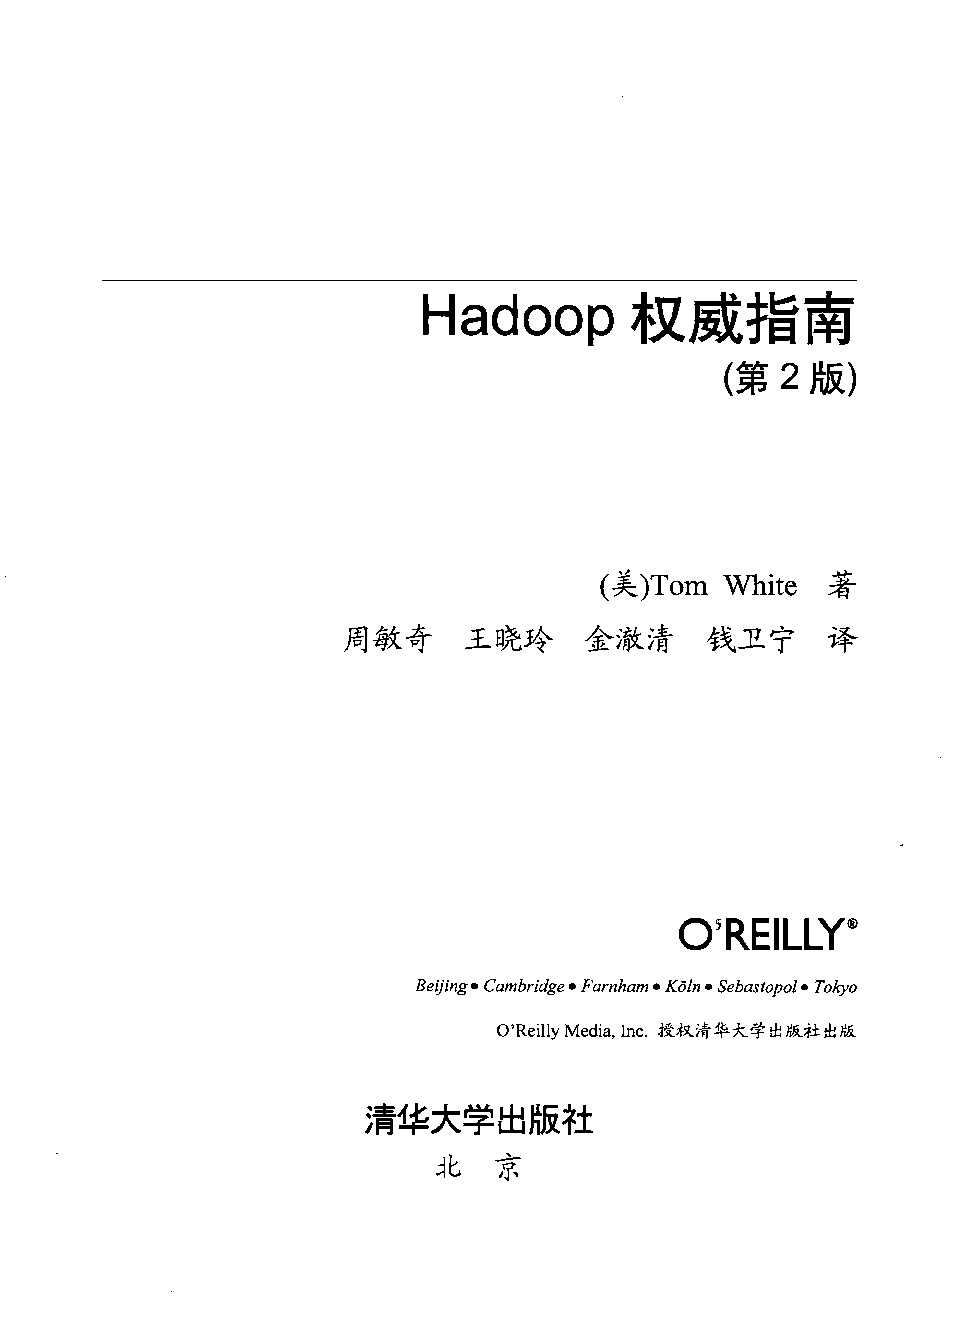 Hadoop/hadoop权威指南（第二版）